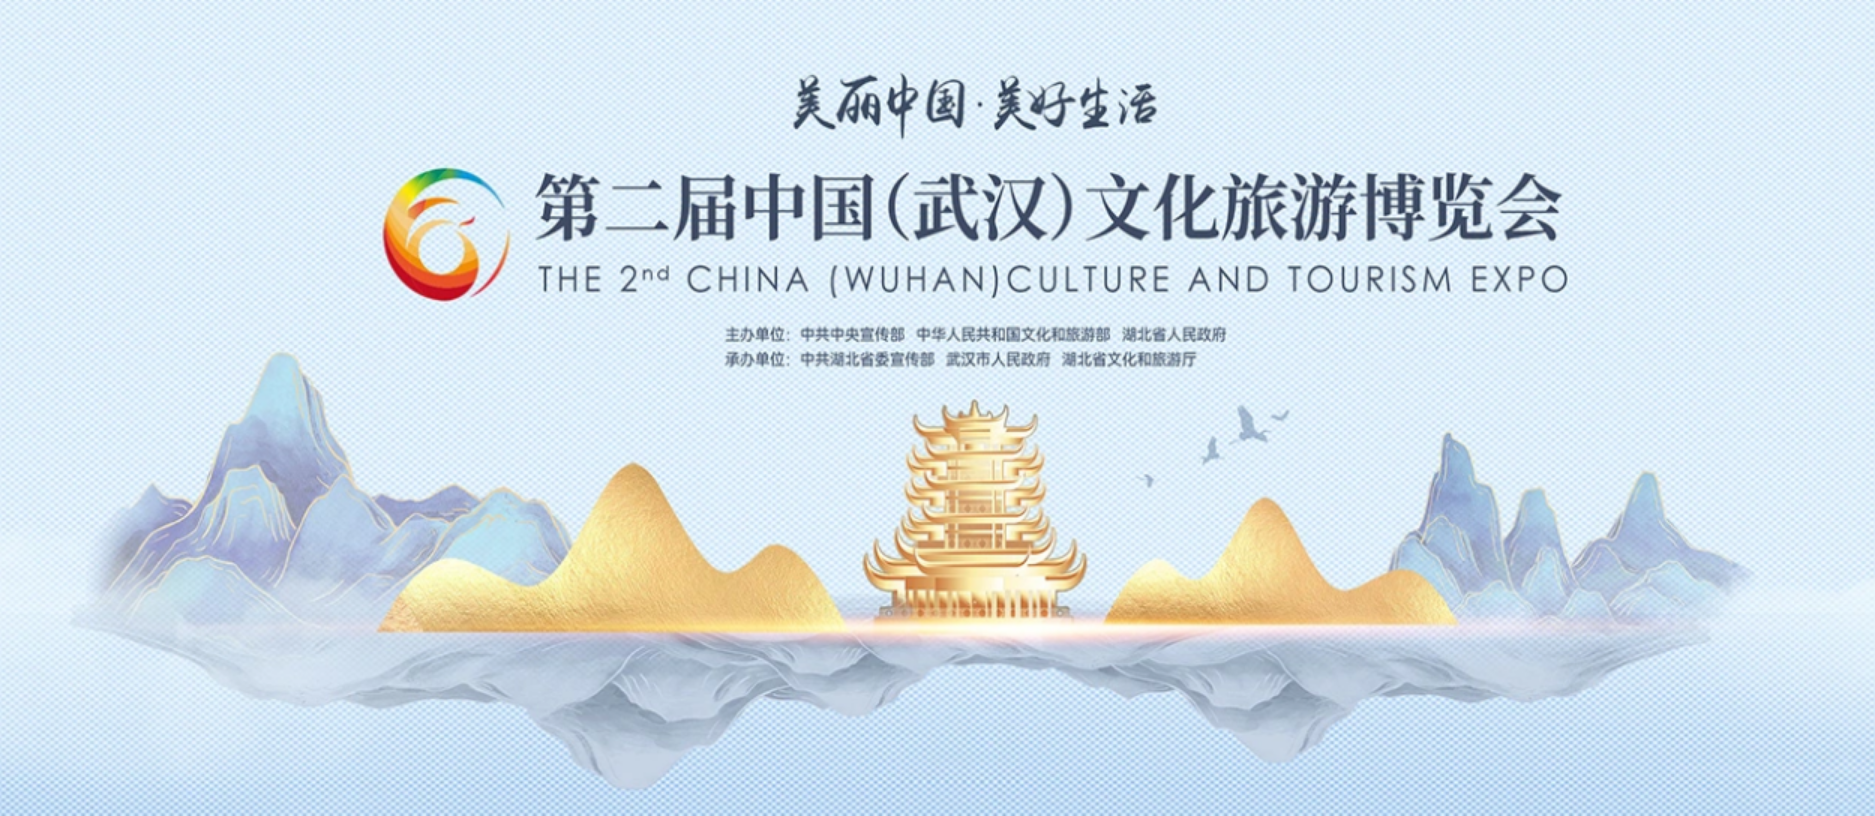 第二屆中國（武漢）文化旅游博覽會——美麗中國 美好生活